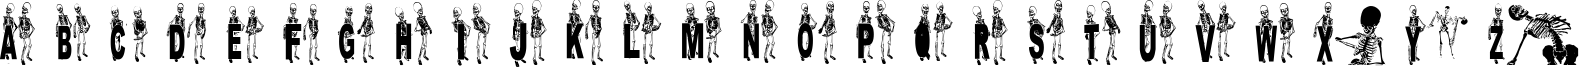 Пример написания английского алфавита шрифтом DANCING-DEAD